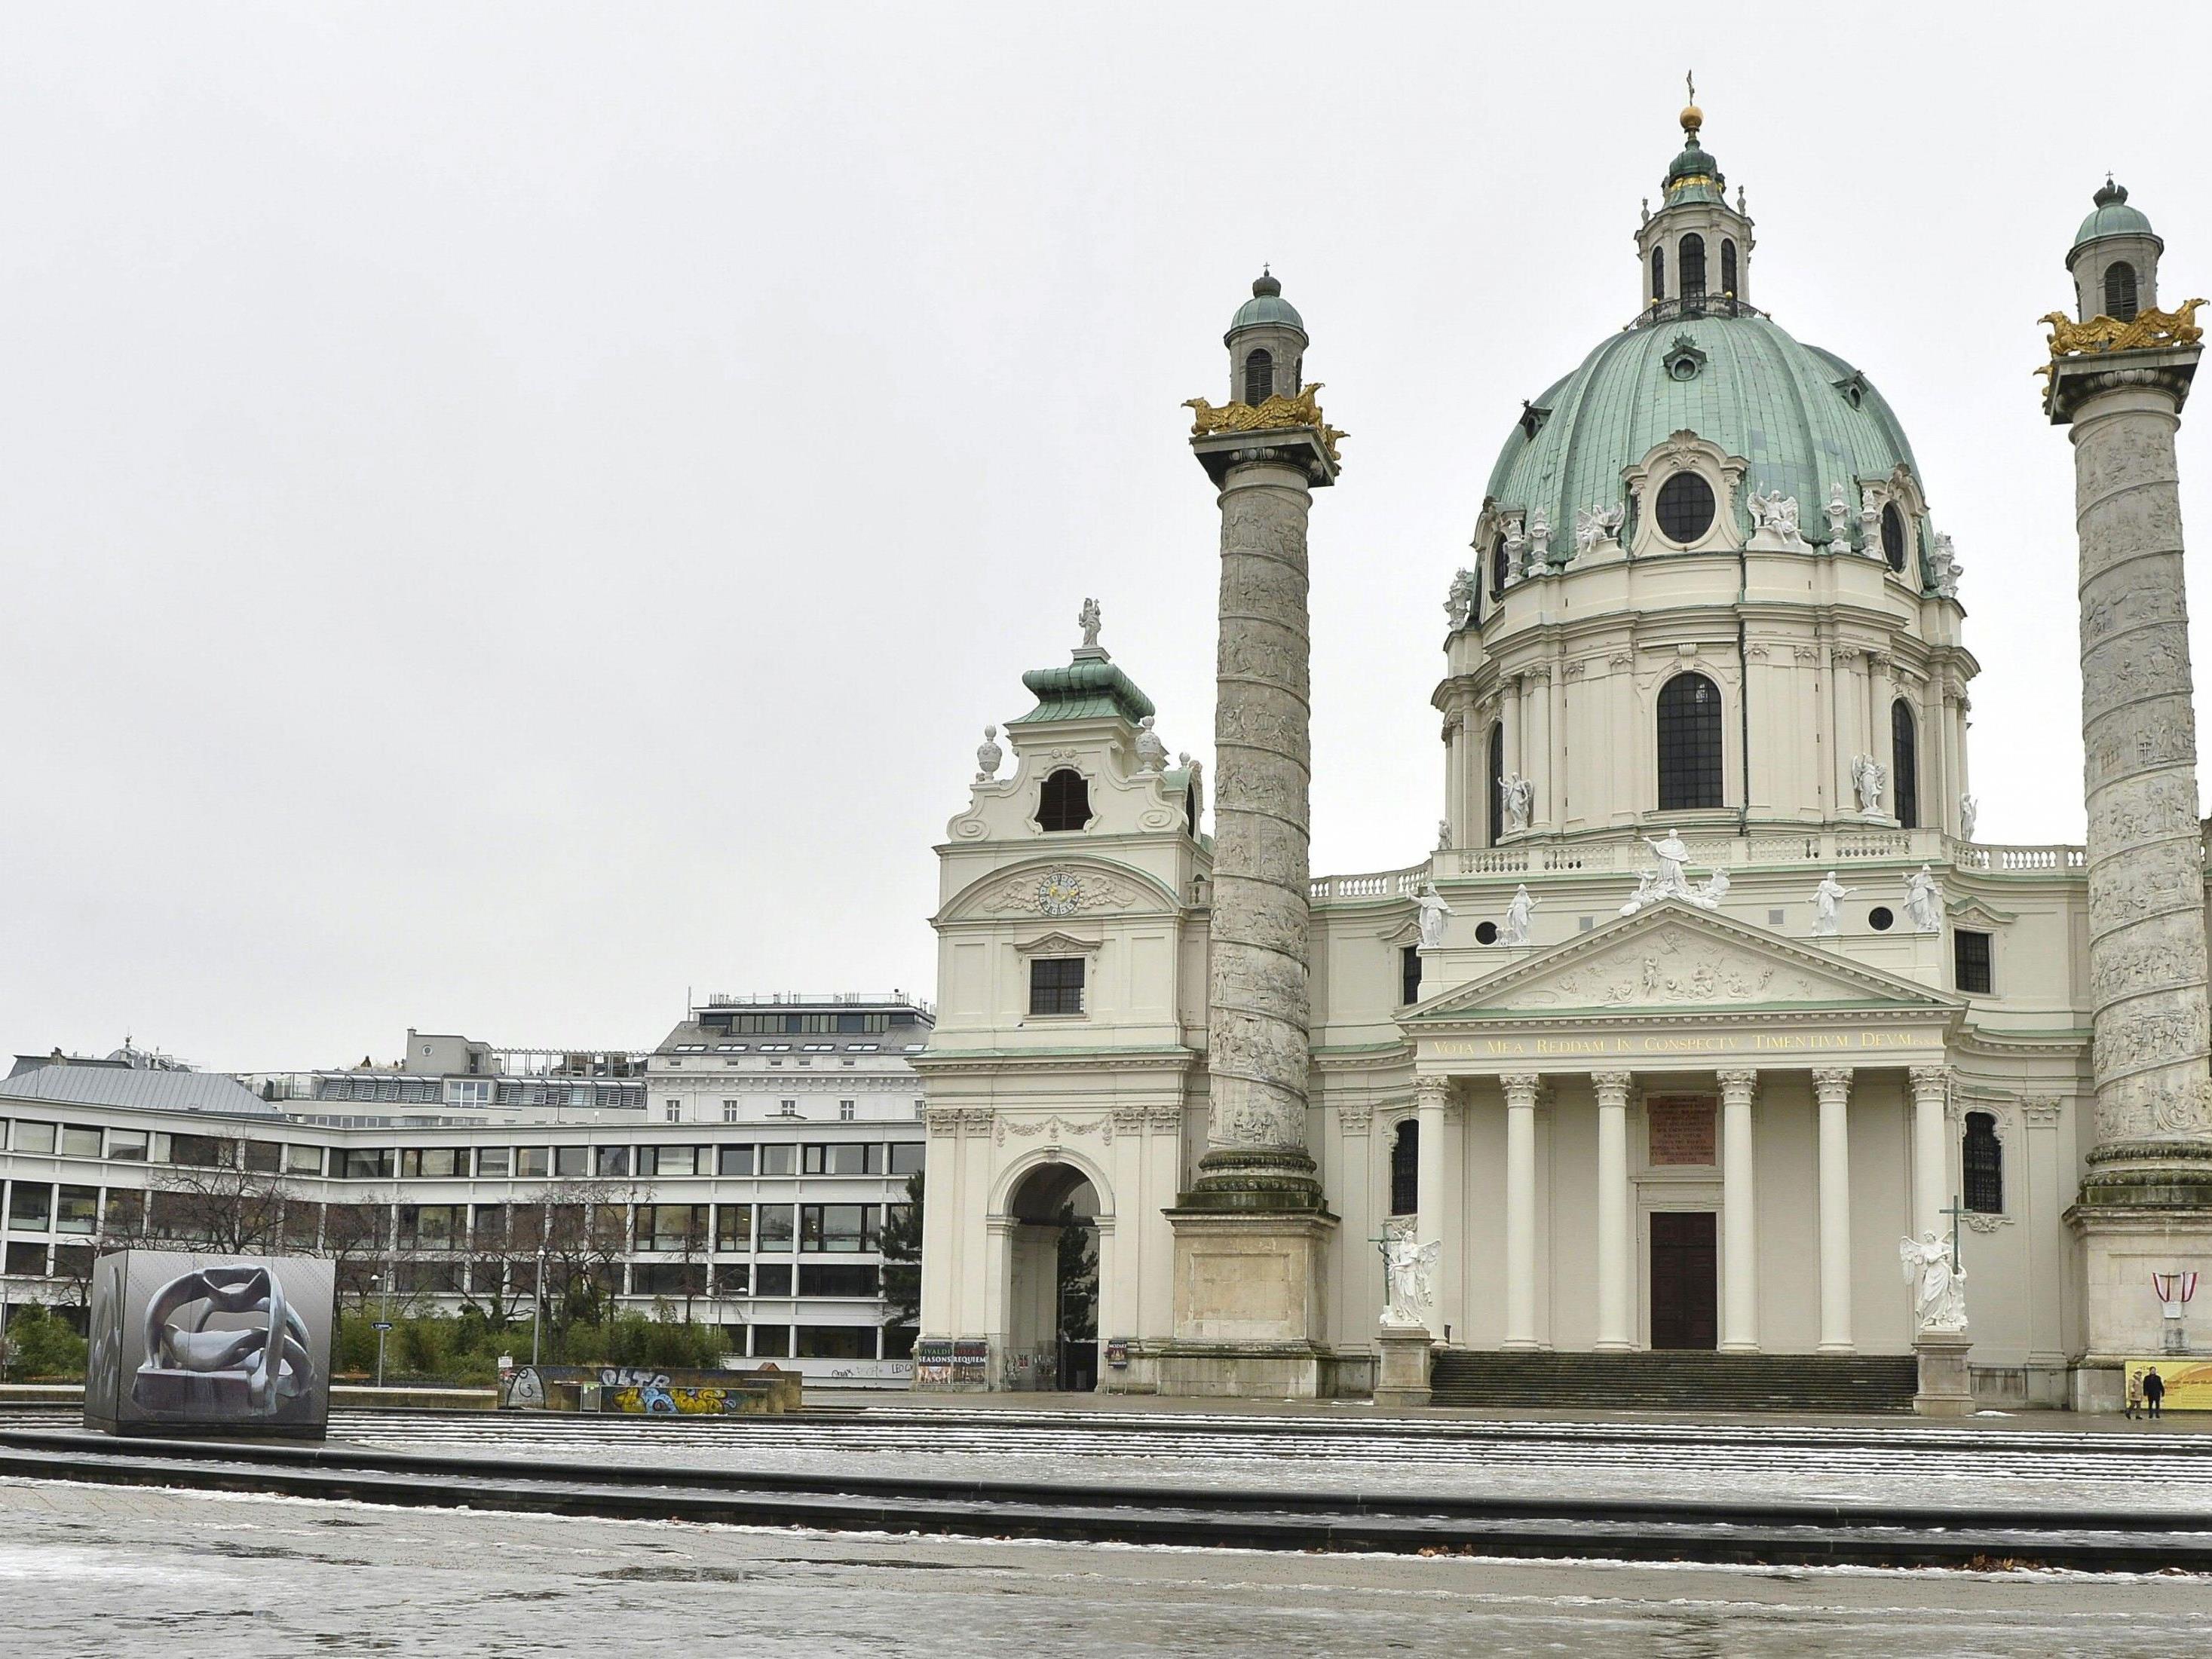 Das Winterthur-Gebäude am Karlsplatz ist Gegenstand einer aktuellen Debatte